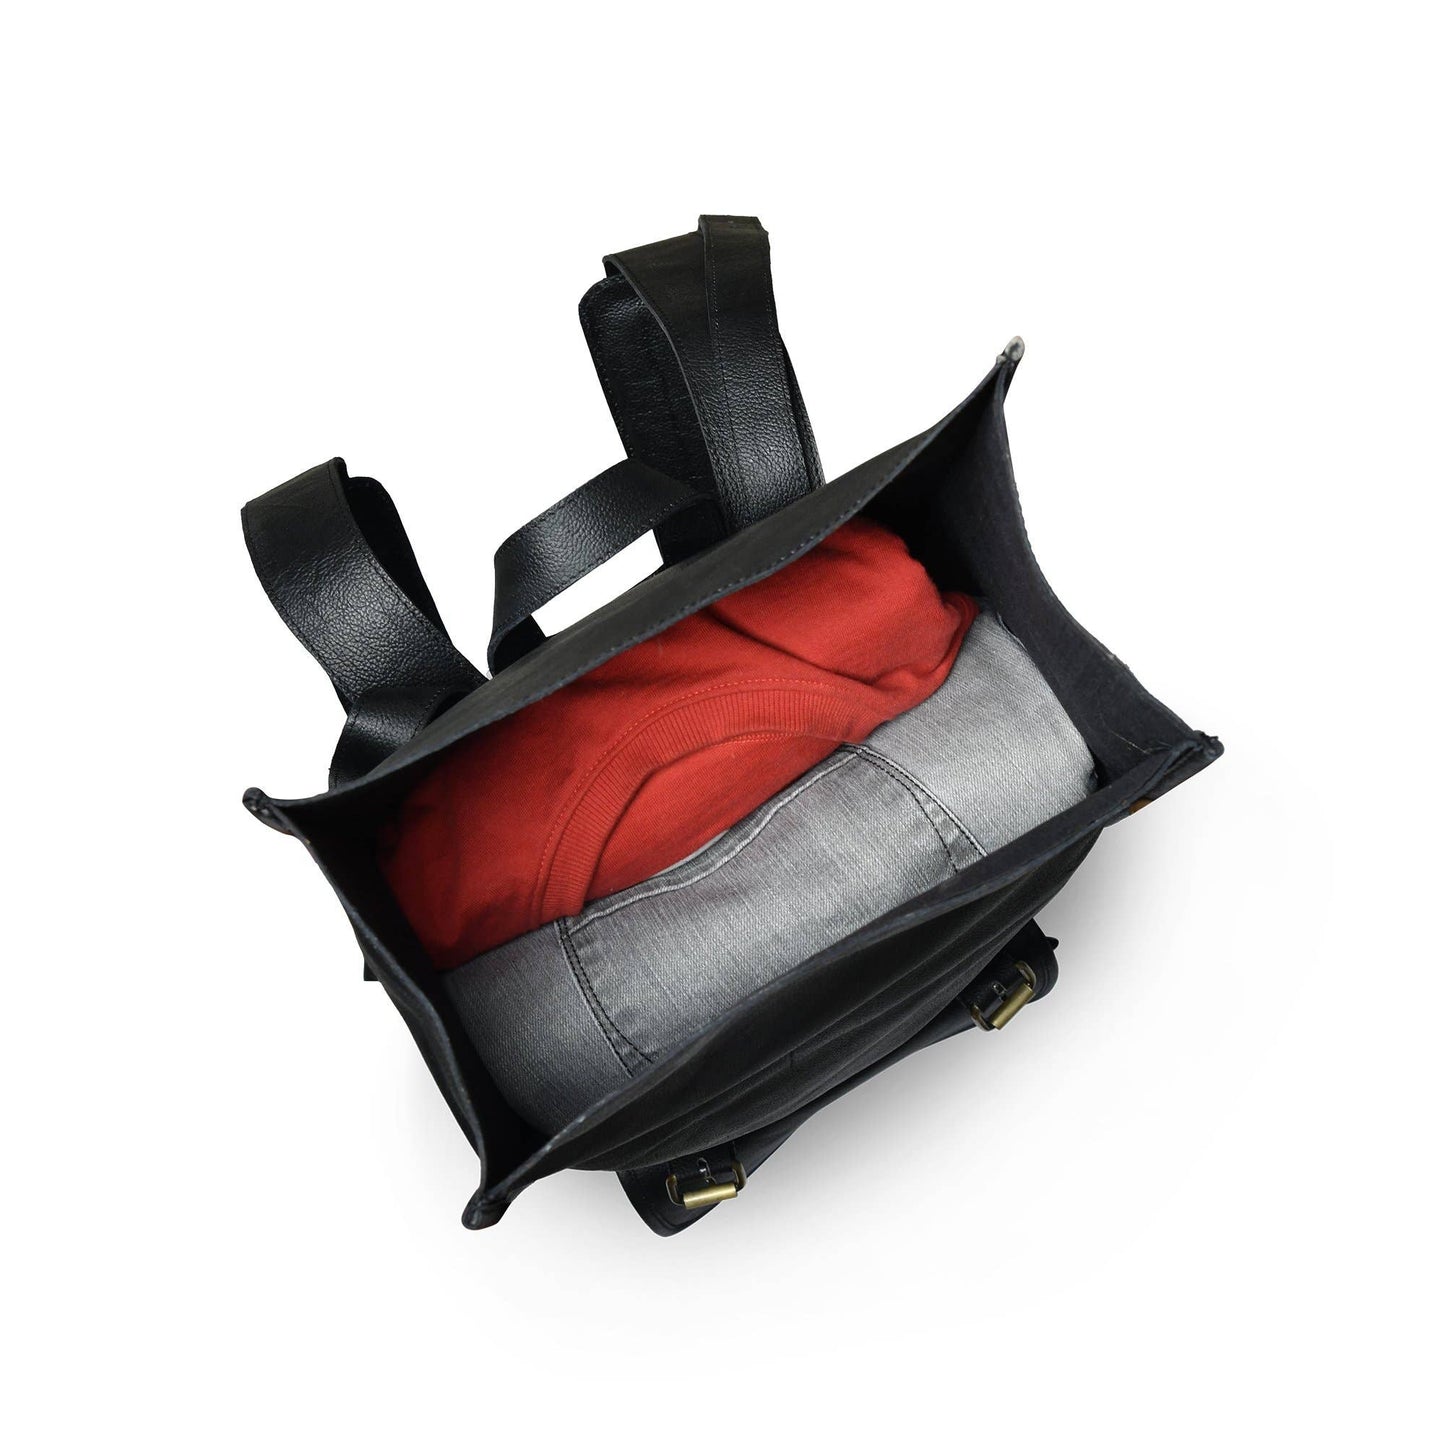 Black Leather Rolltop Backpack